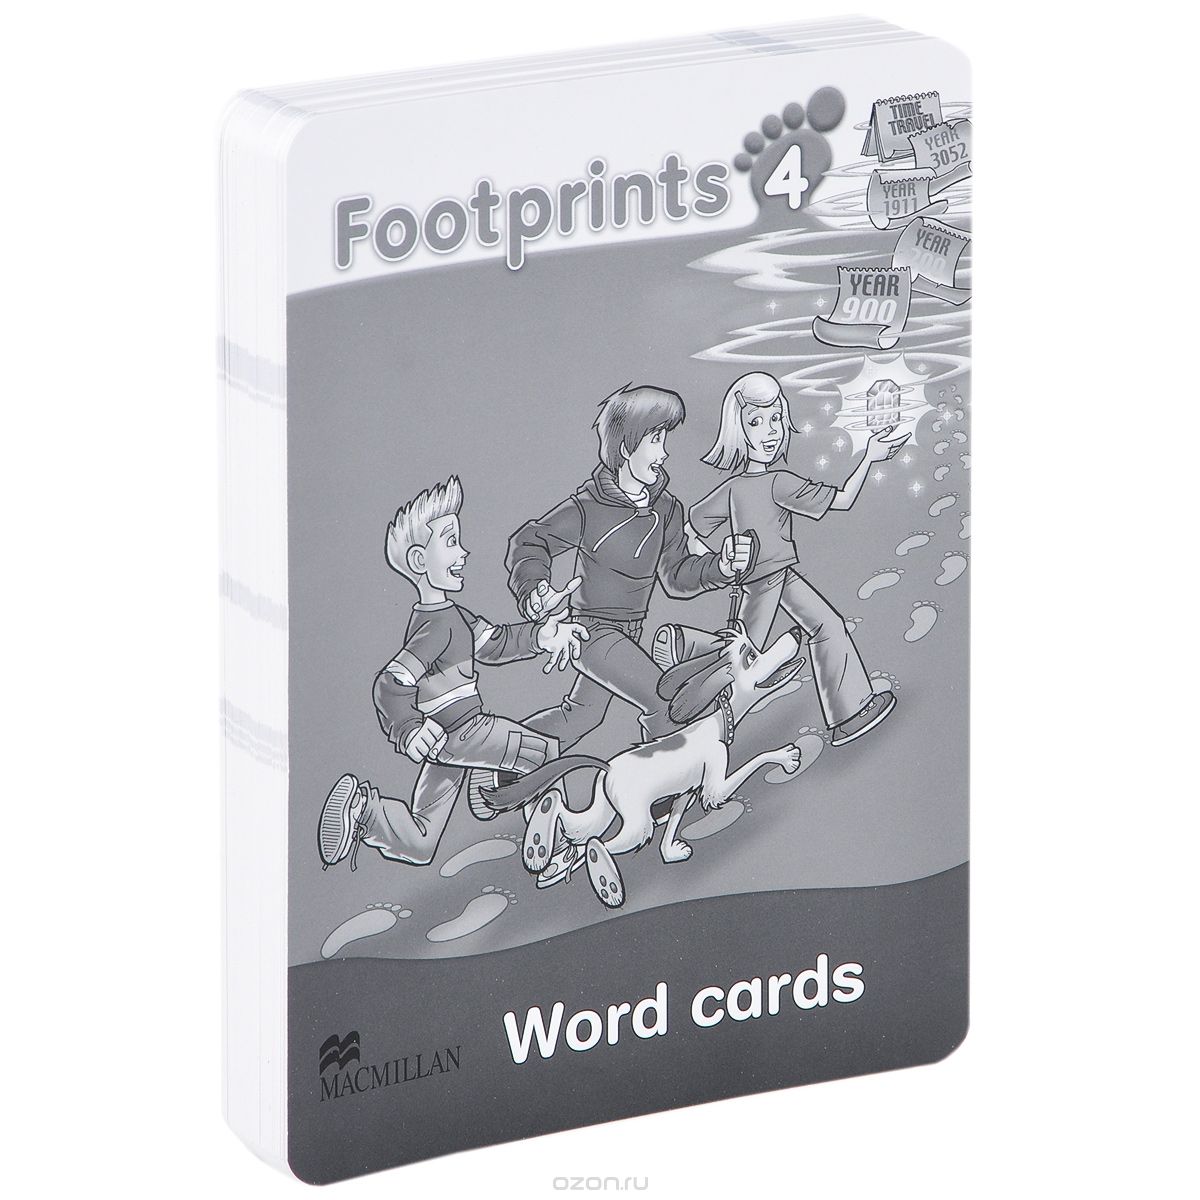 Скачать книгу "Footprints 4: Word Cards (набор из 114 карточек)"